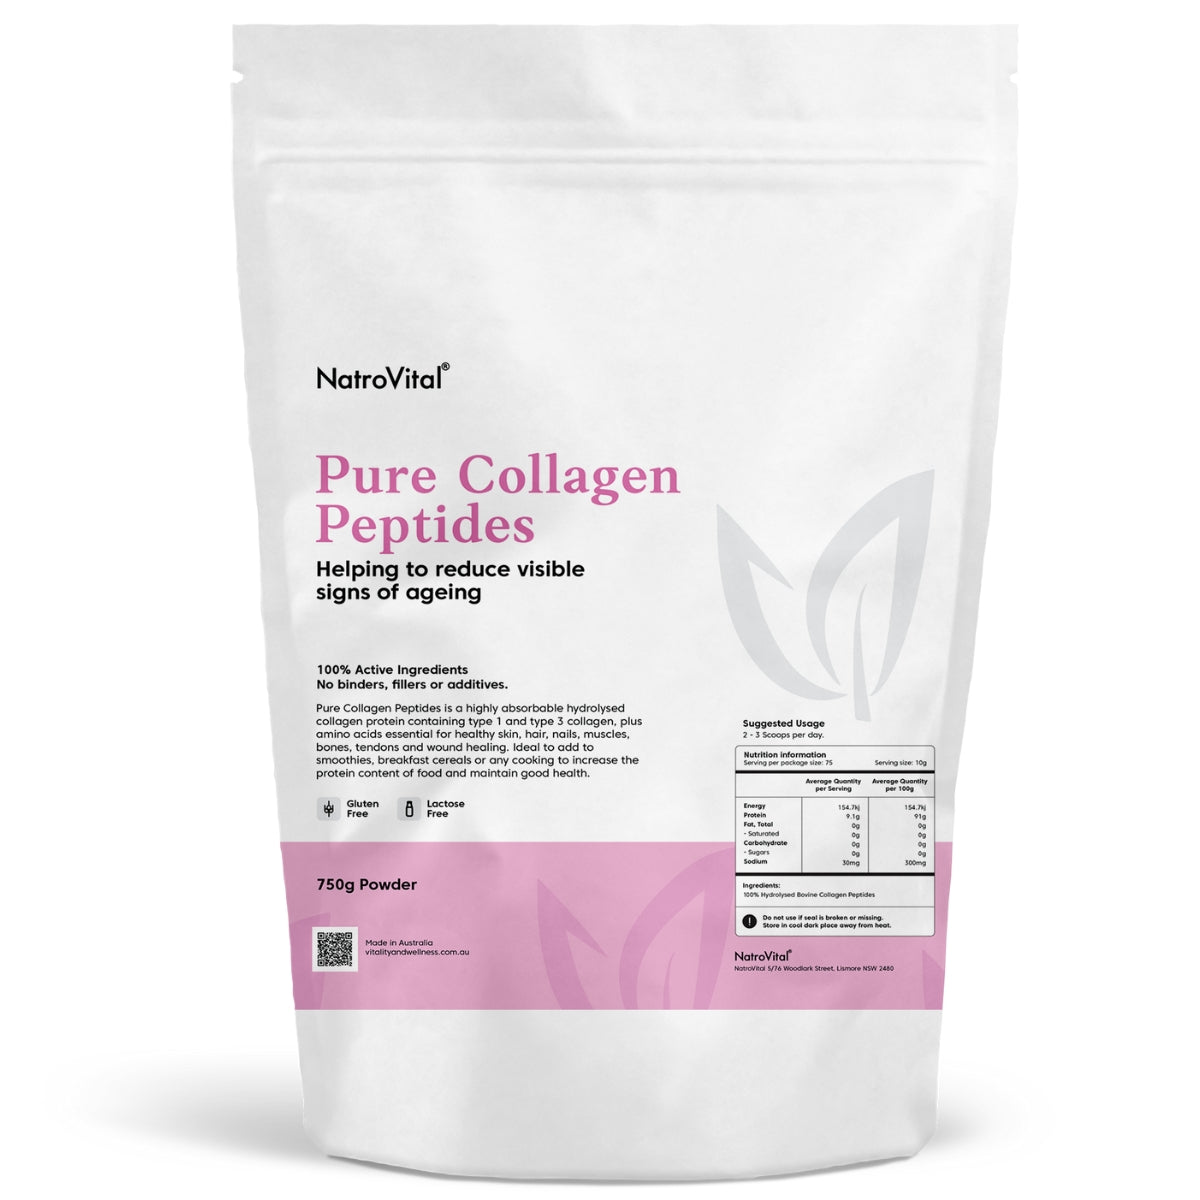 NatroVital Pure Collagen Peptides | NatroVital